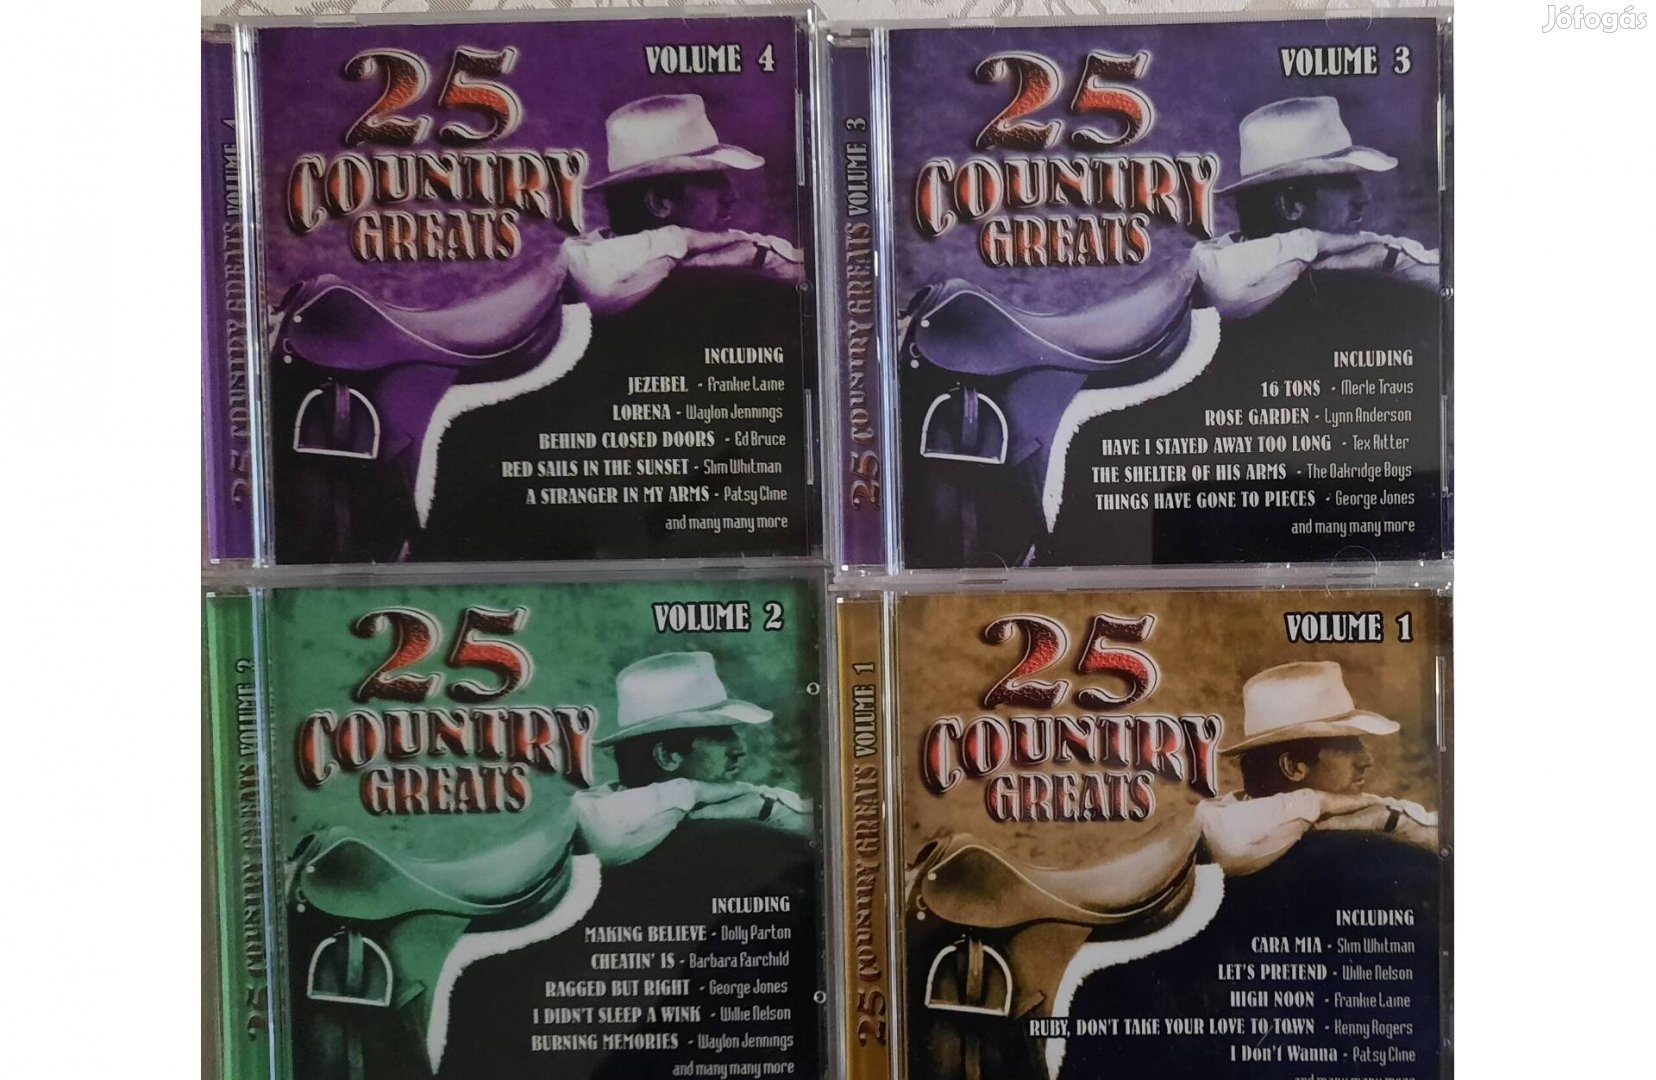 4 darabos, 100 Country greats CD szett eladó